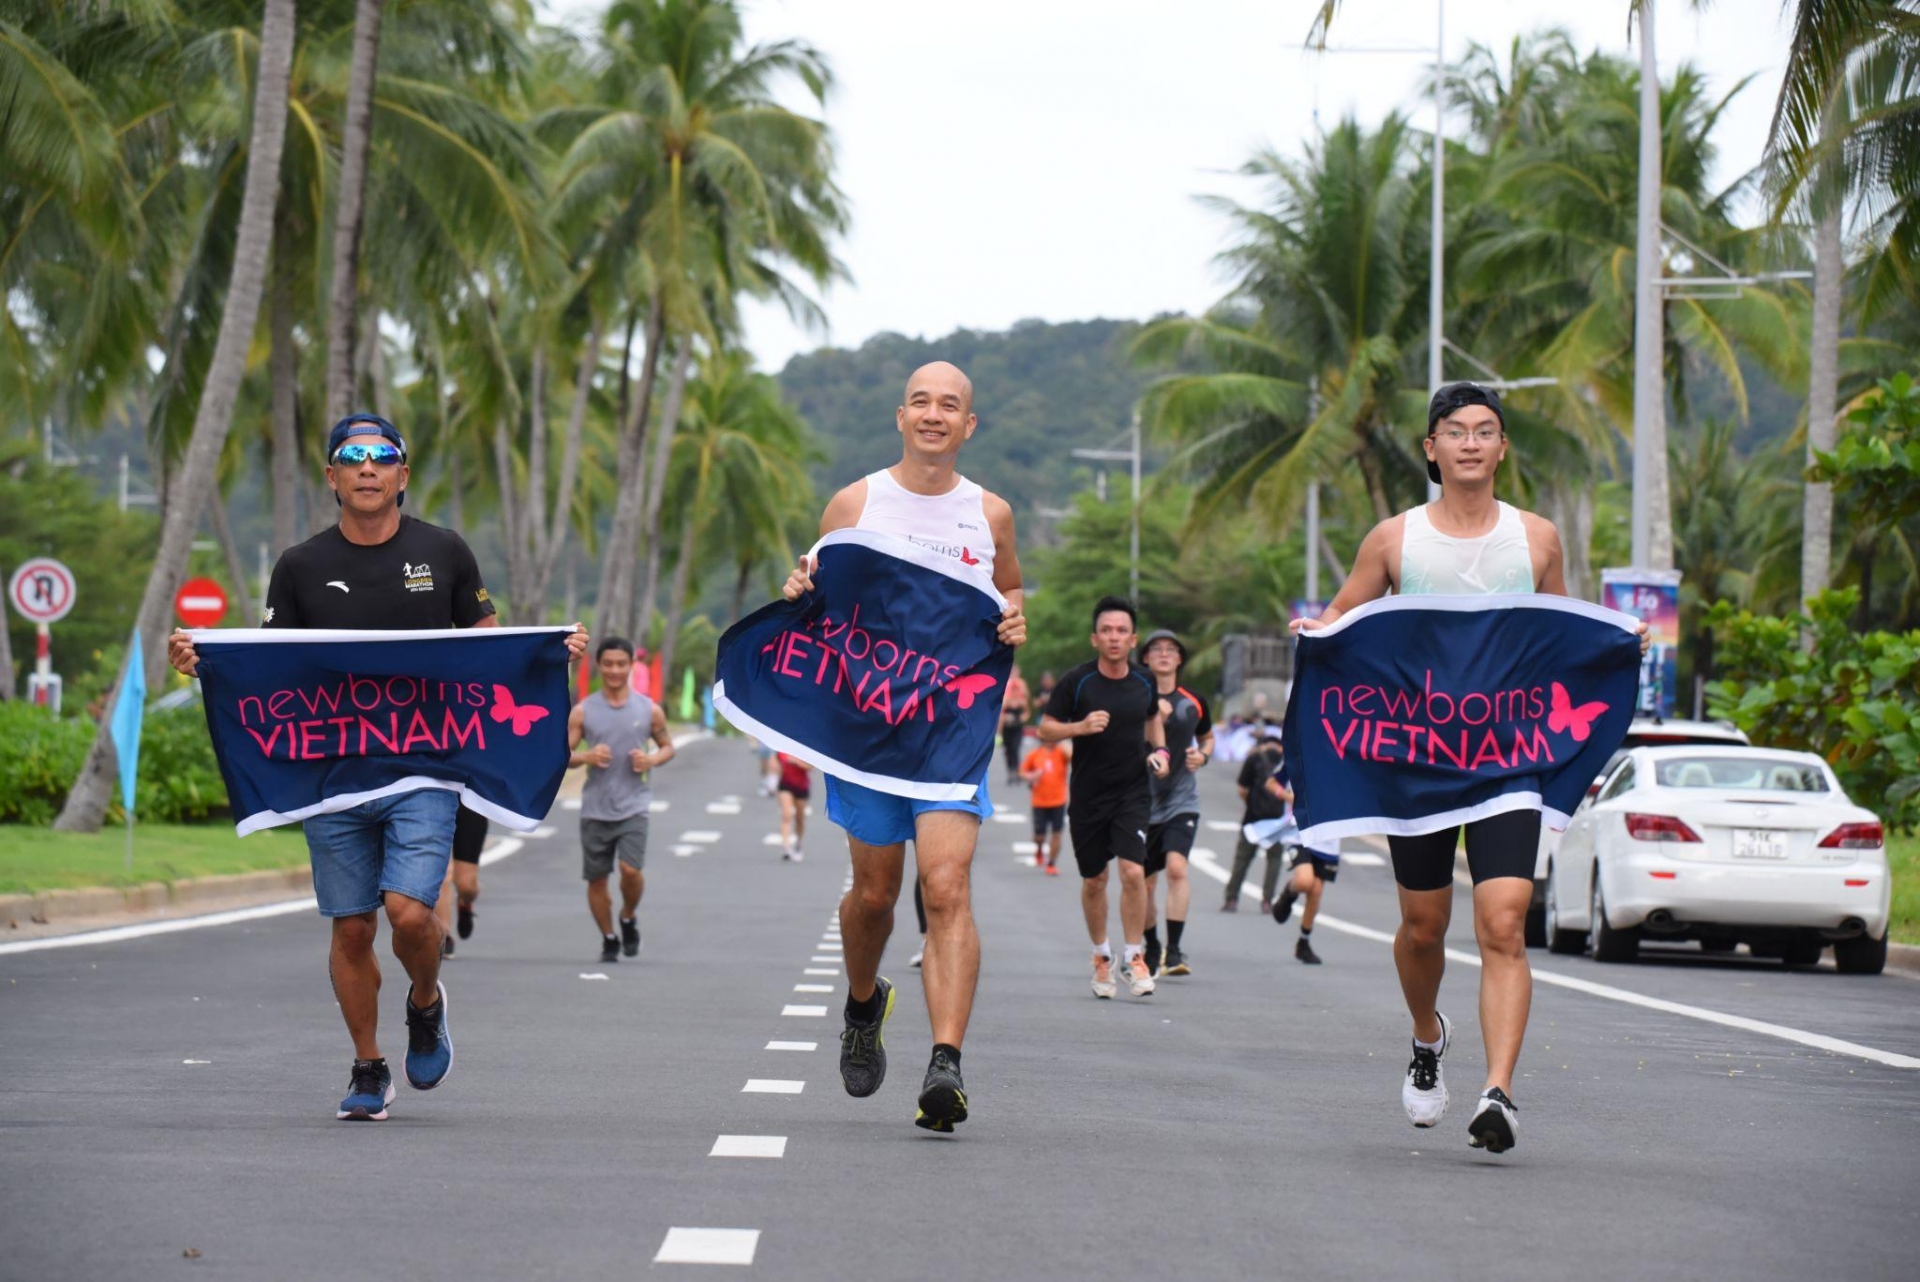 Những hình ảnh ấn tượng từ sự kiện 5150 Triathlon đầu tiên tại Việt Nam